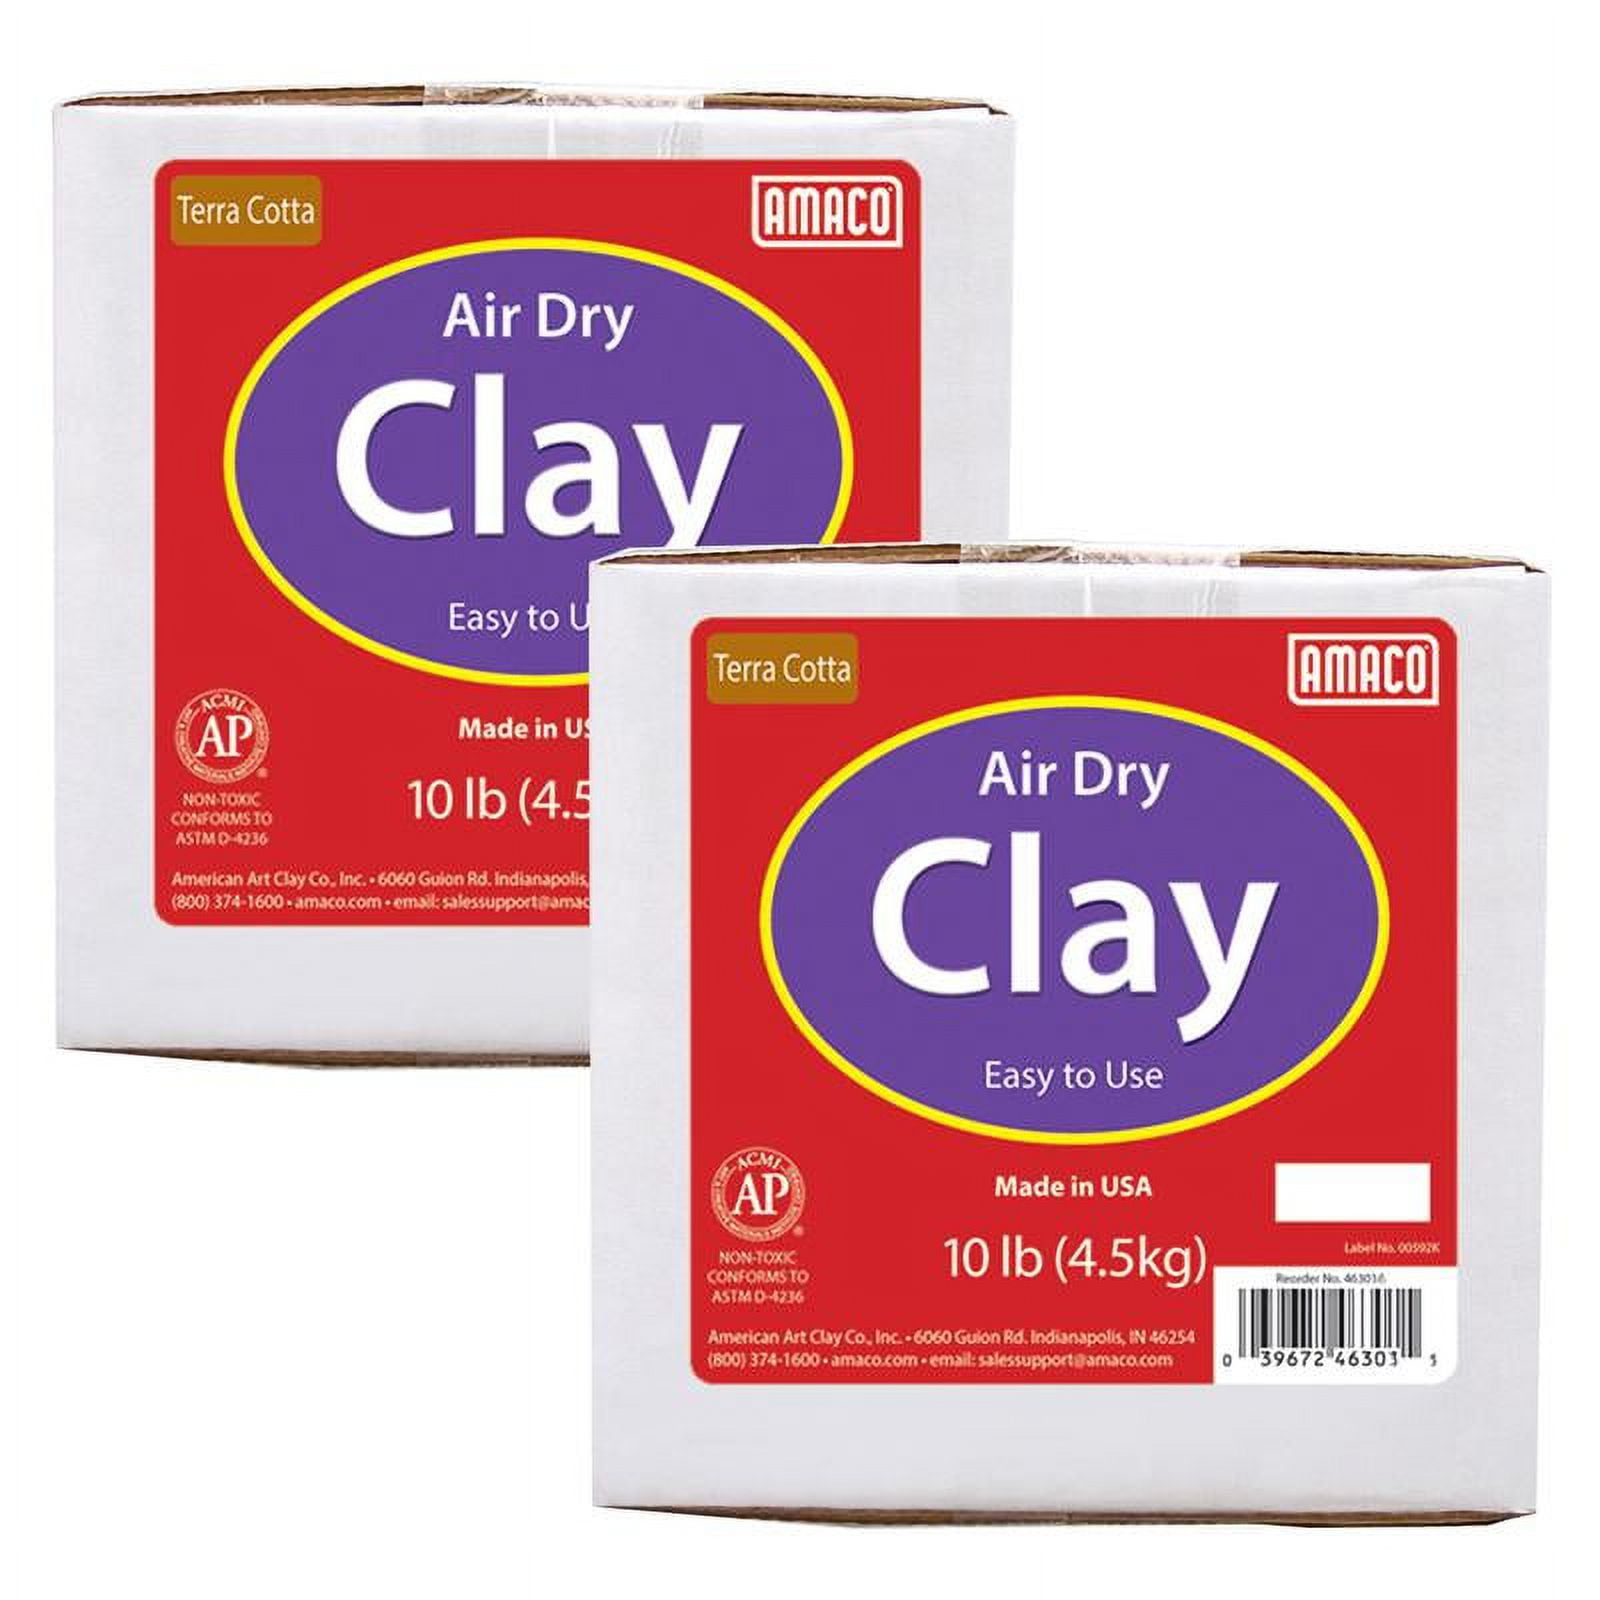 Amaco Air Dry Clay, Terra Cotta, 10 lbs. per Box, 2 Boxes